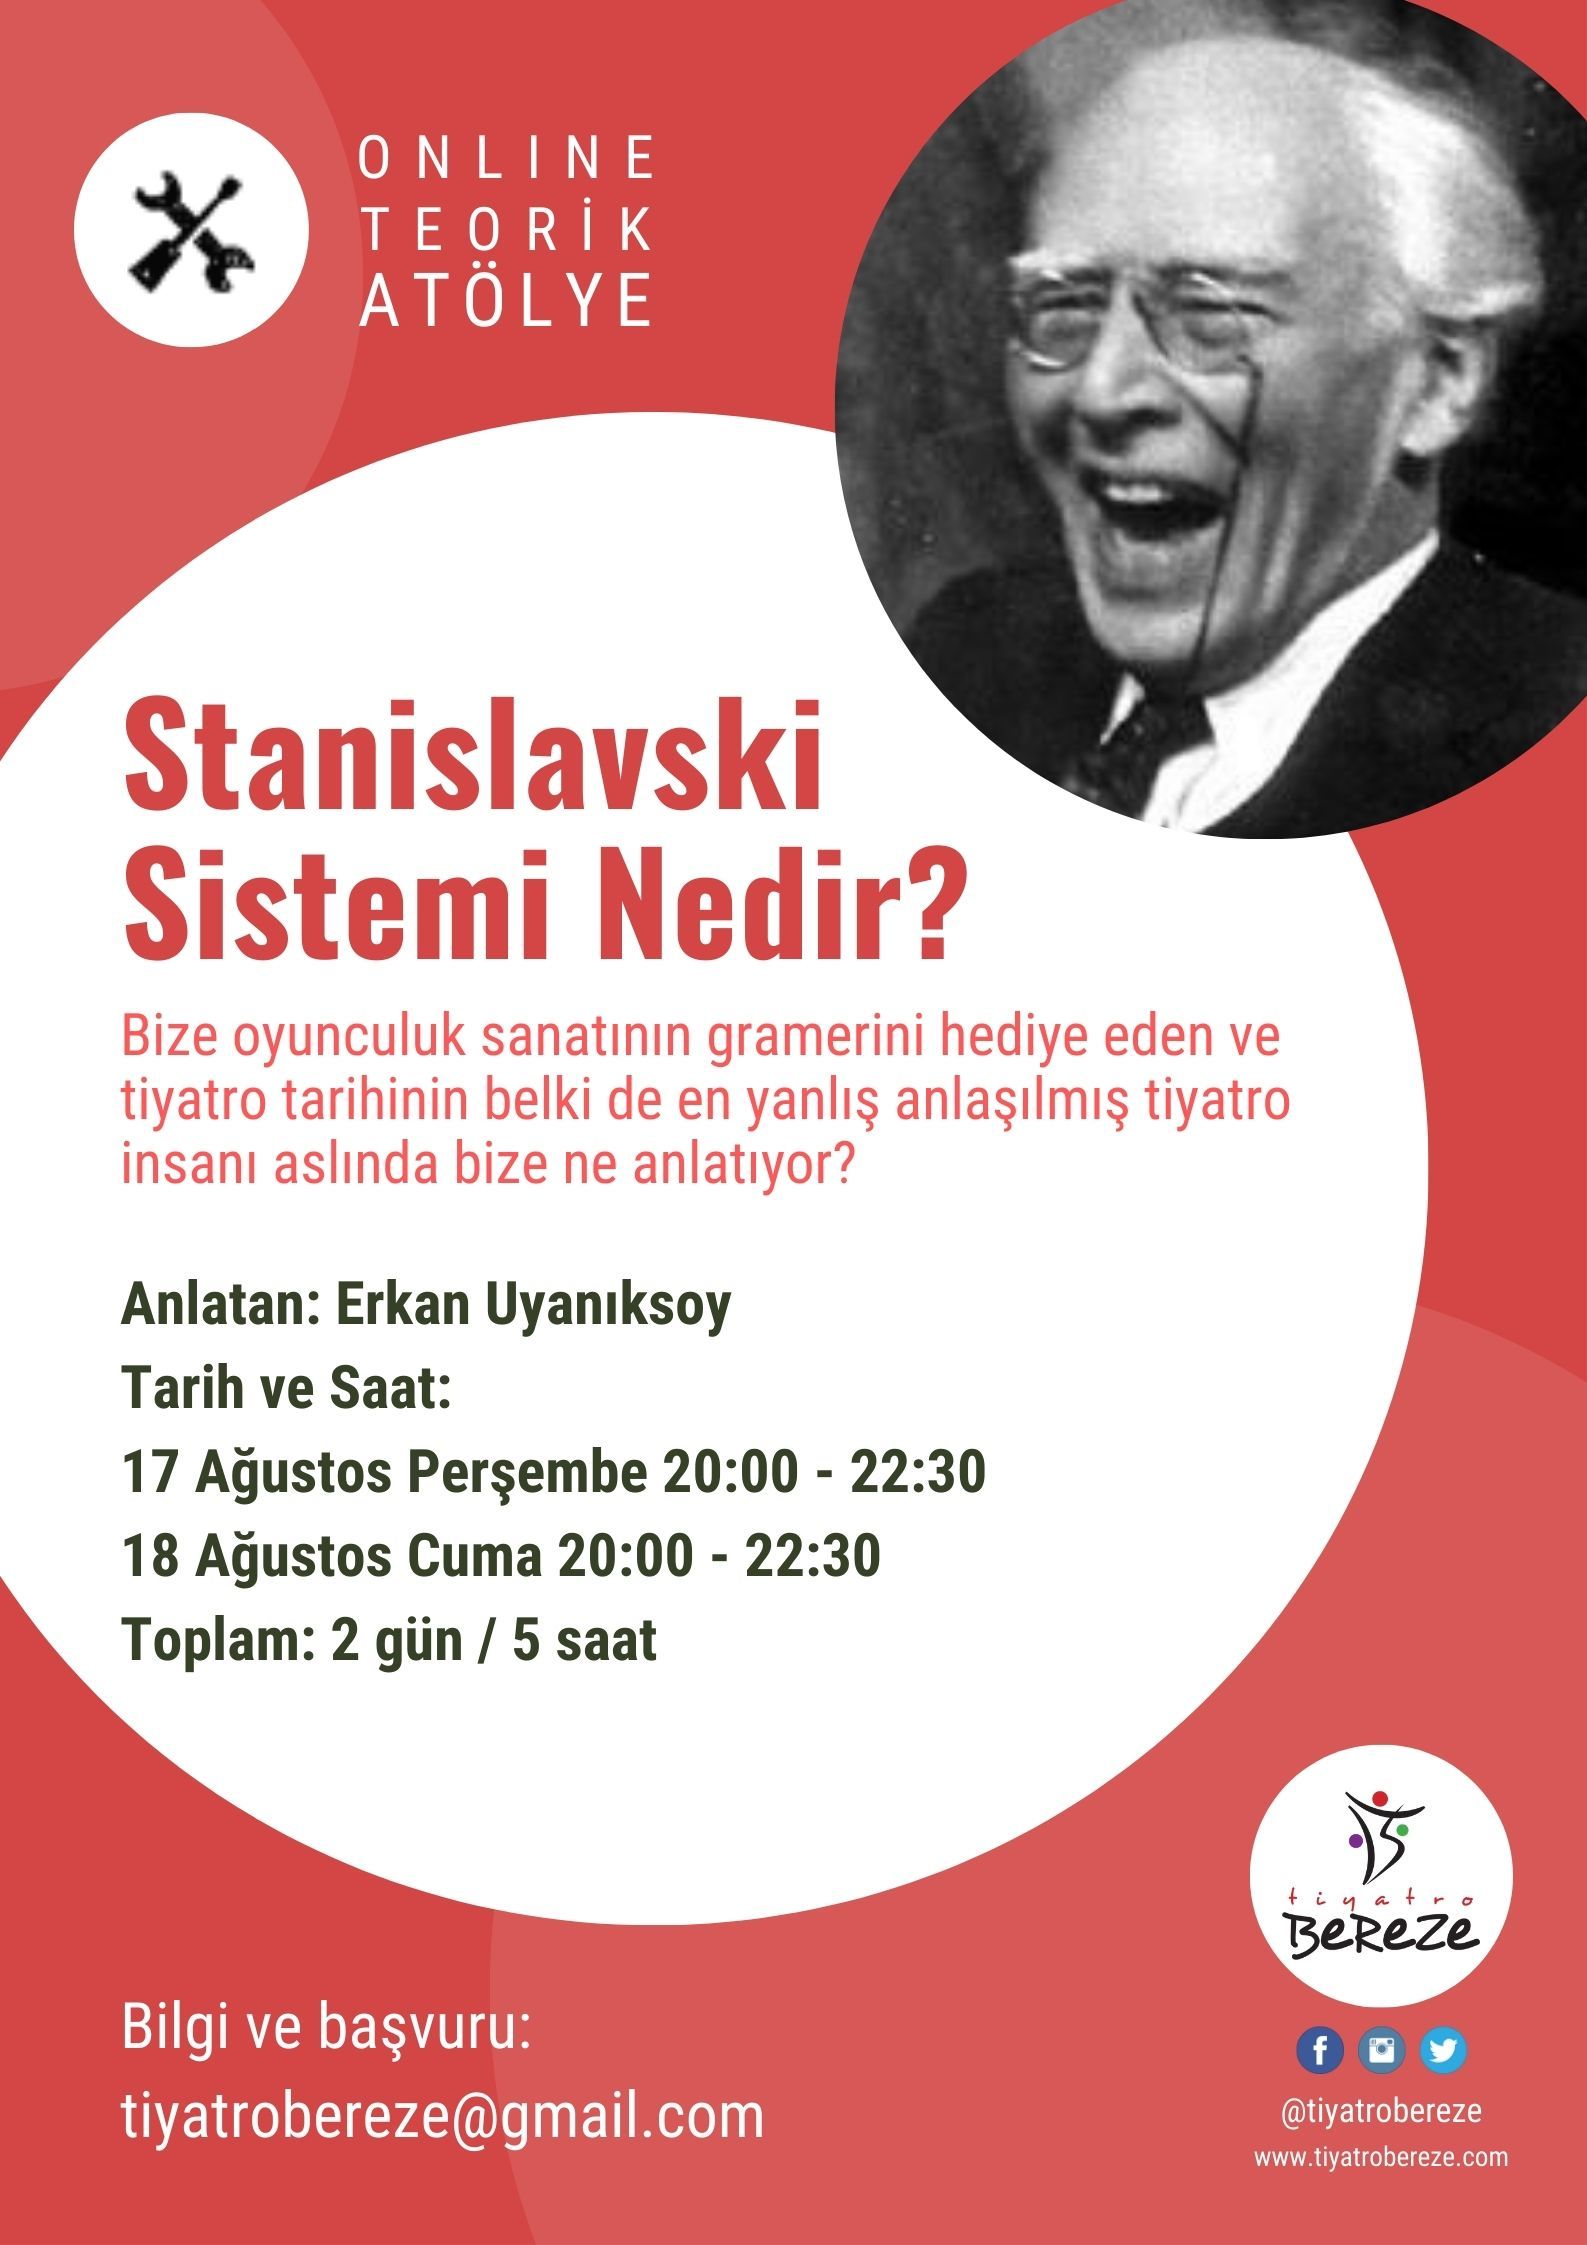 Stanislavski Sistemi Nedir? - Online Teorik Atölye